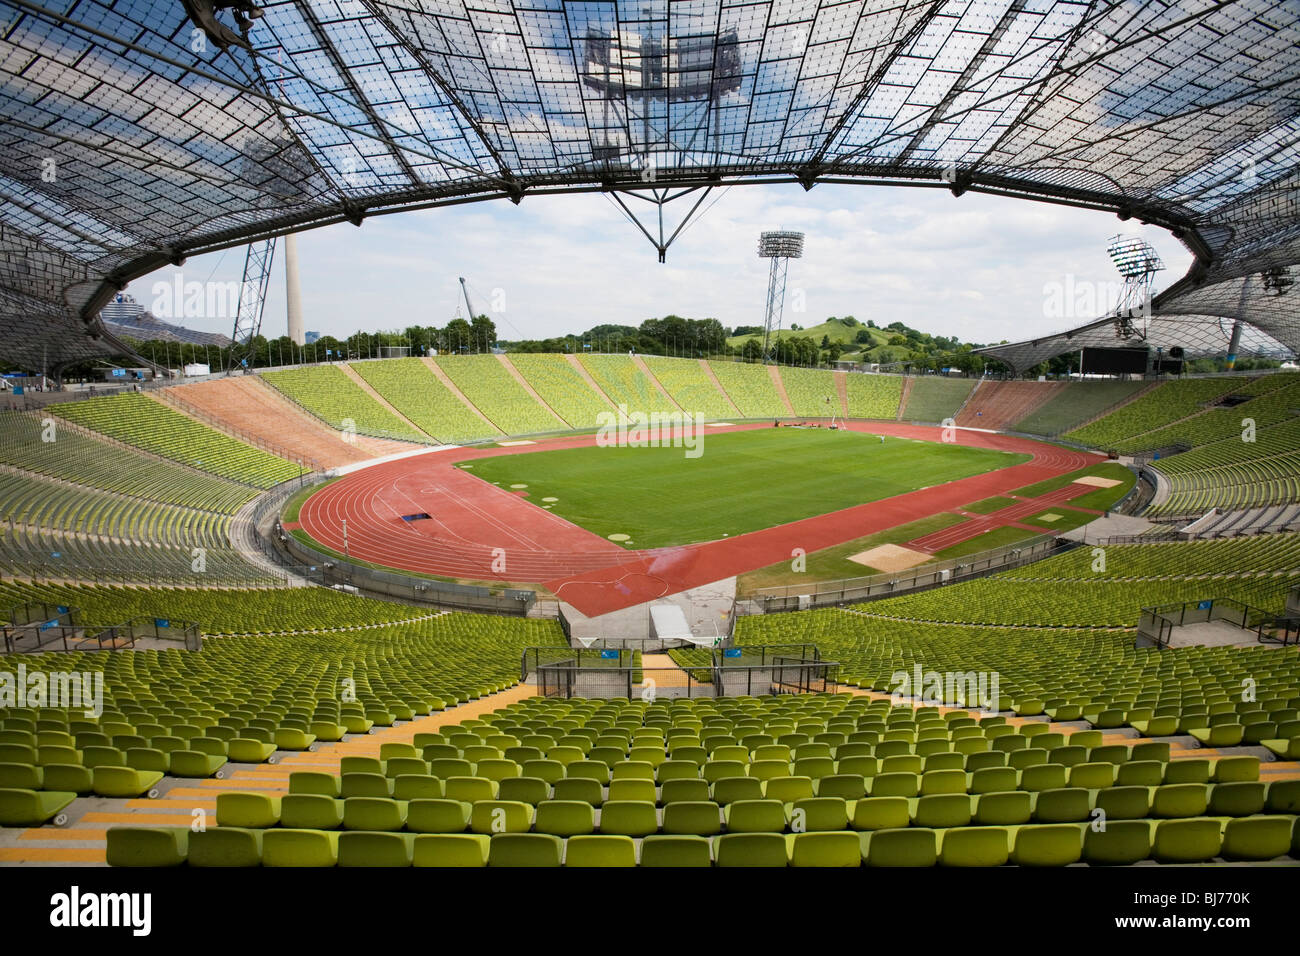 Frei Otto se crispa de structures pour l'Jeux olympiques de Munich 72. Stade olympique et le parc. Munich Allemagne Banque D'Images